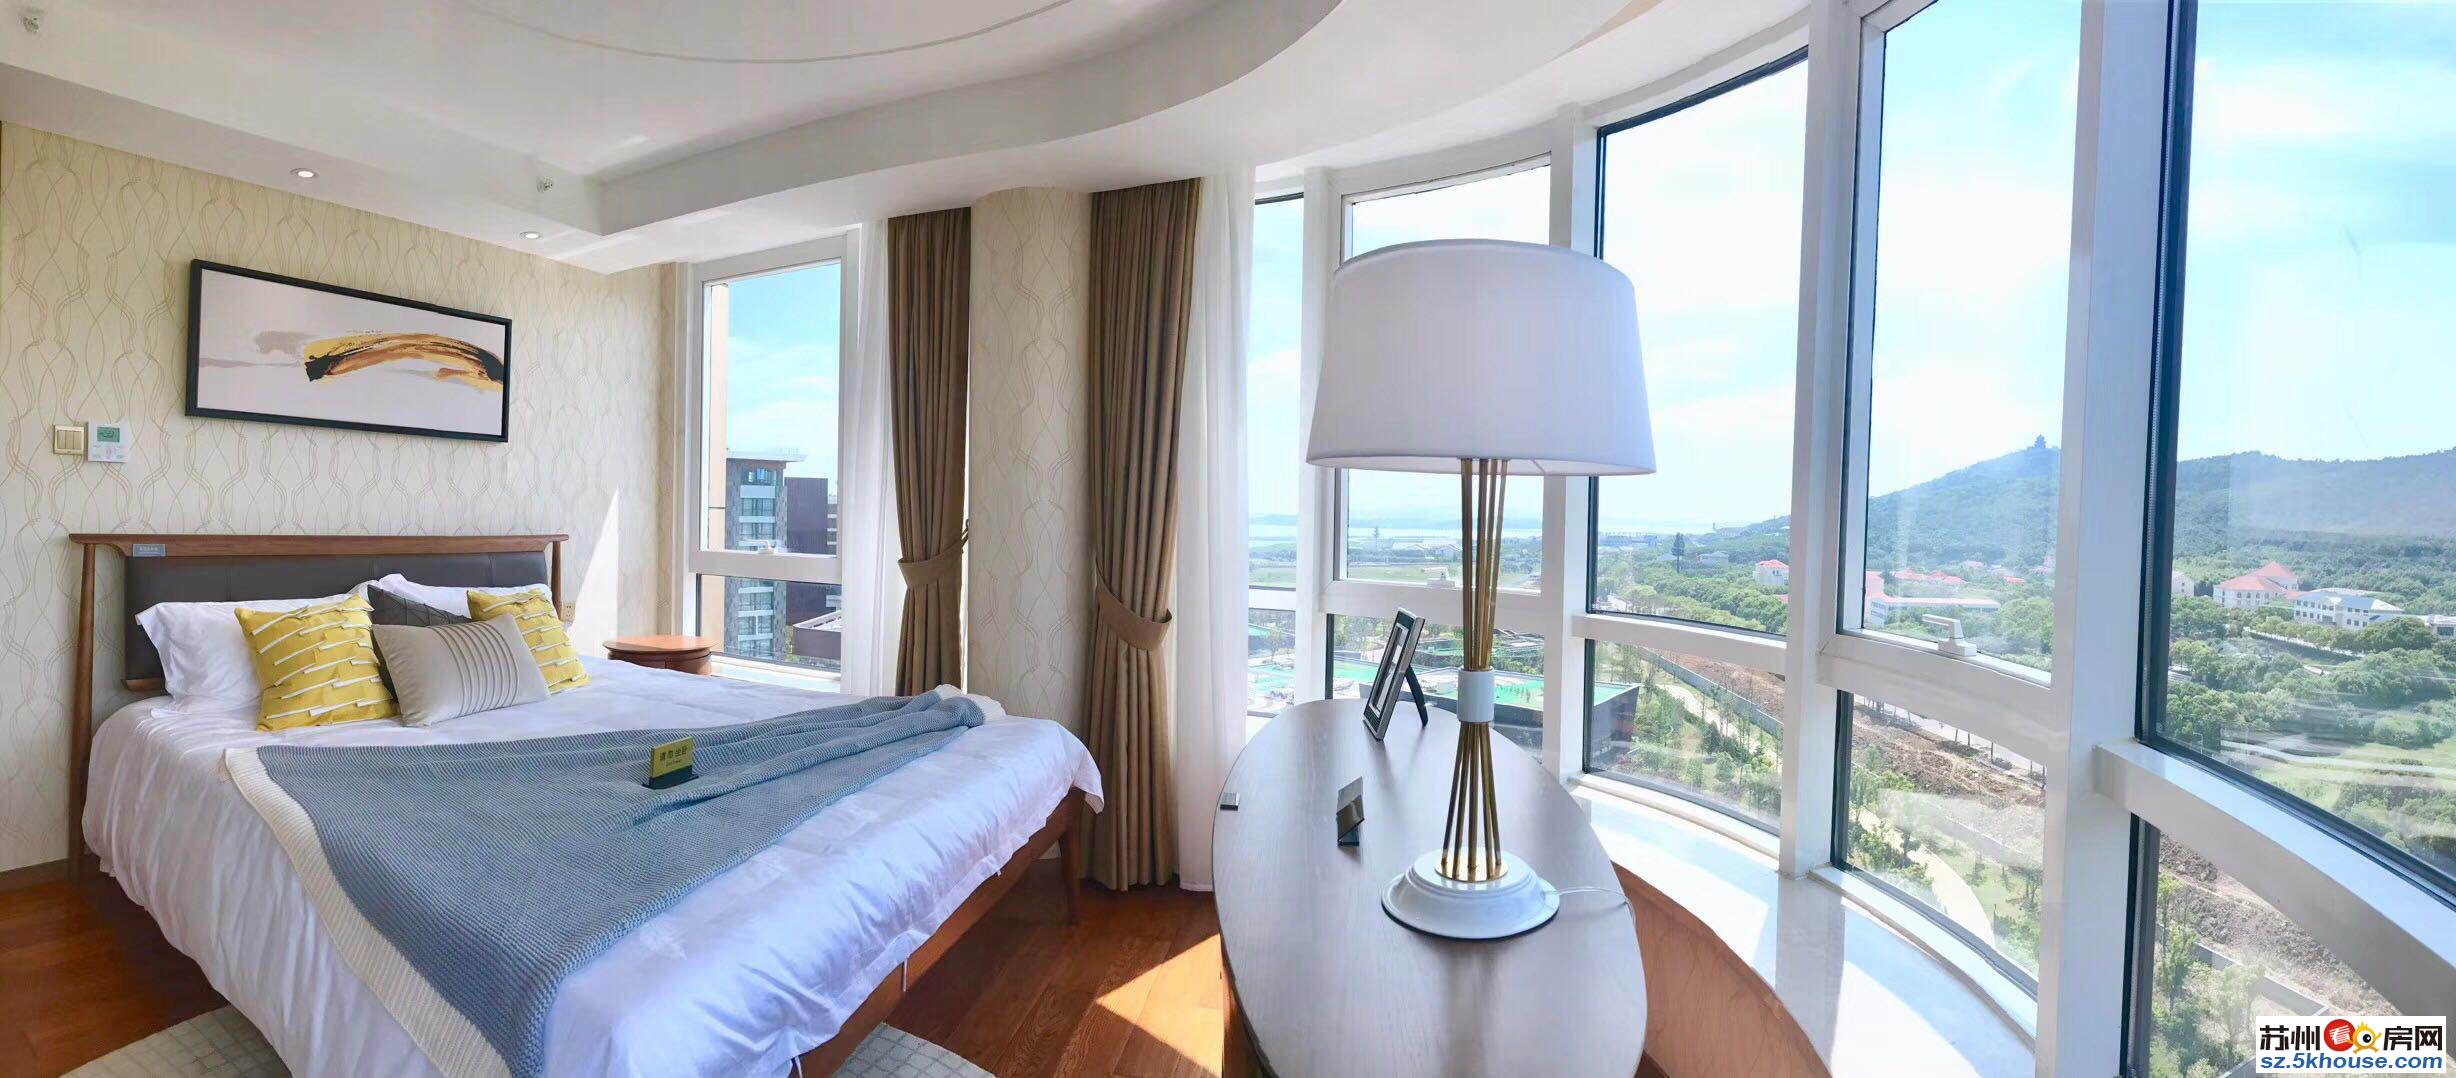 城仕高尔夫太湖 度假区高端酒店式公寓 豪装价格可控 多面积段